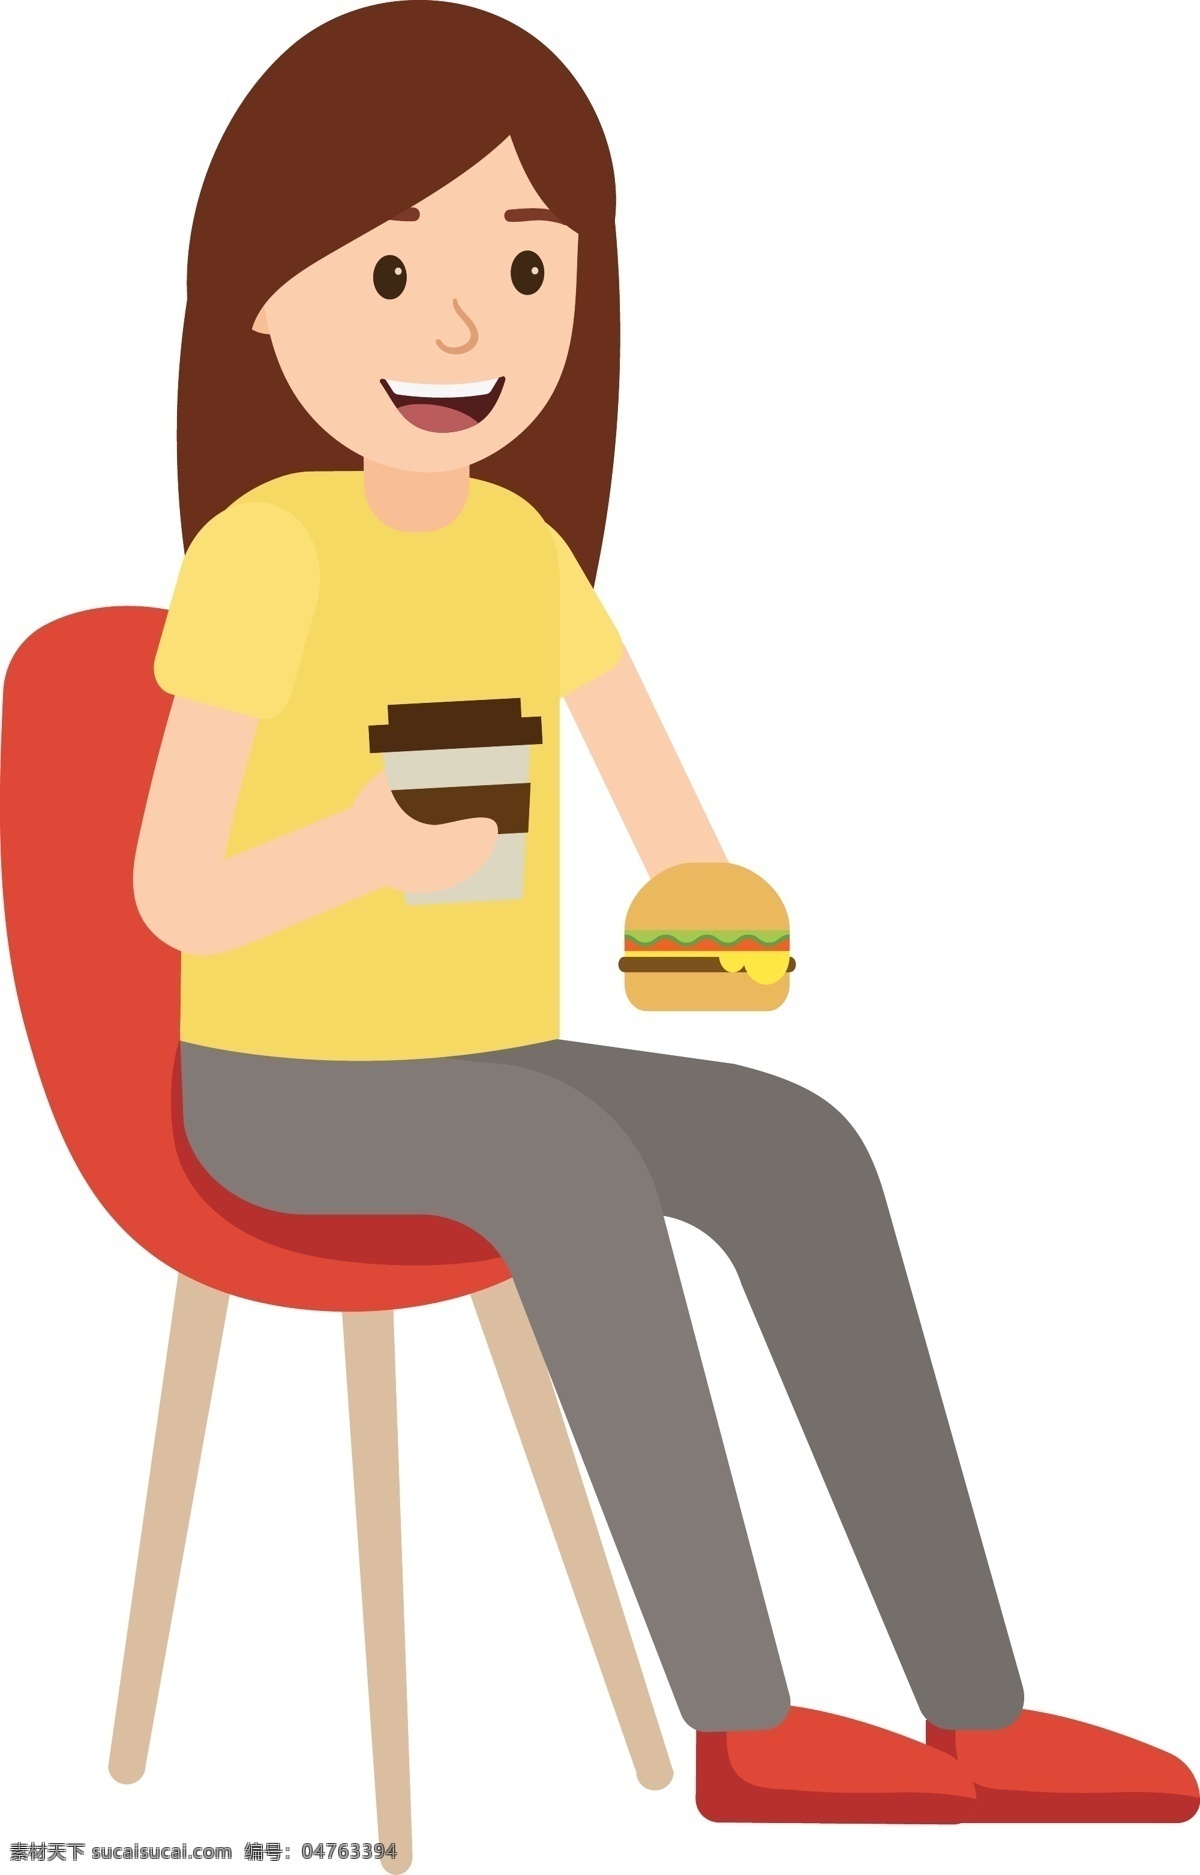 矢量 卡通 正在 喝 咖啡 吃 汉堡 人 喝咖啡 吃汉堡 快餐 坐着 凳子 吃饭 西餐 肥胖 健康 油炸 女人 午餐